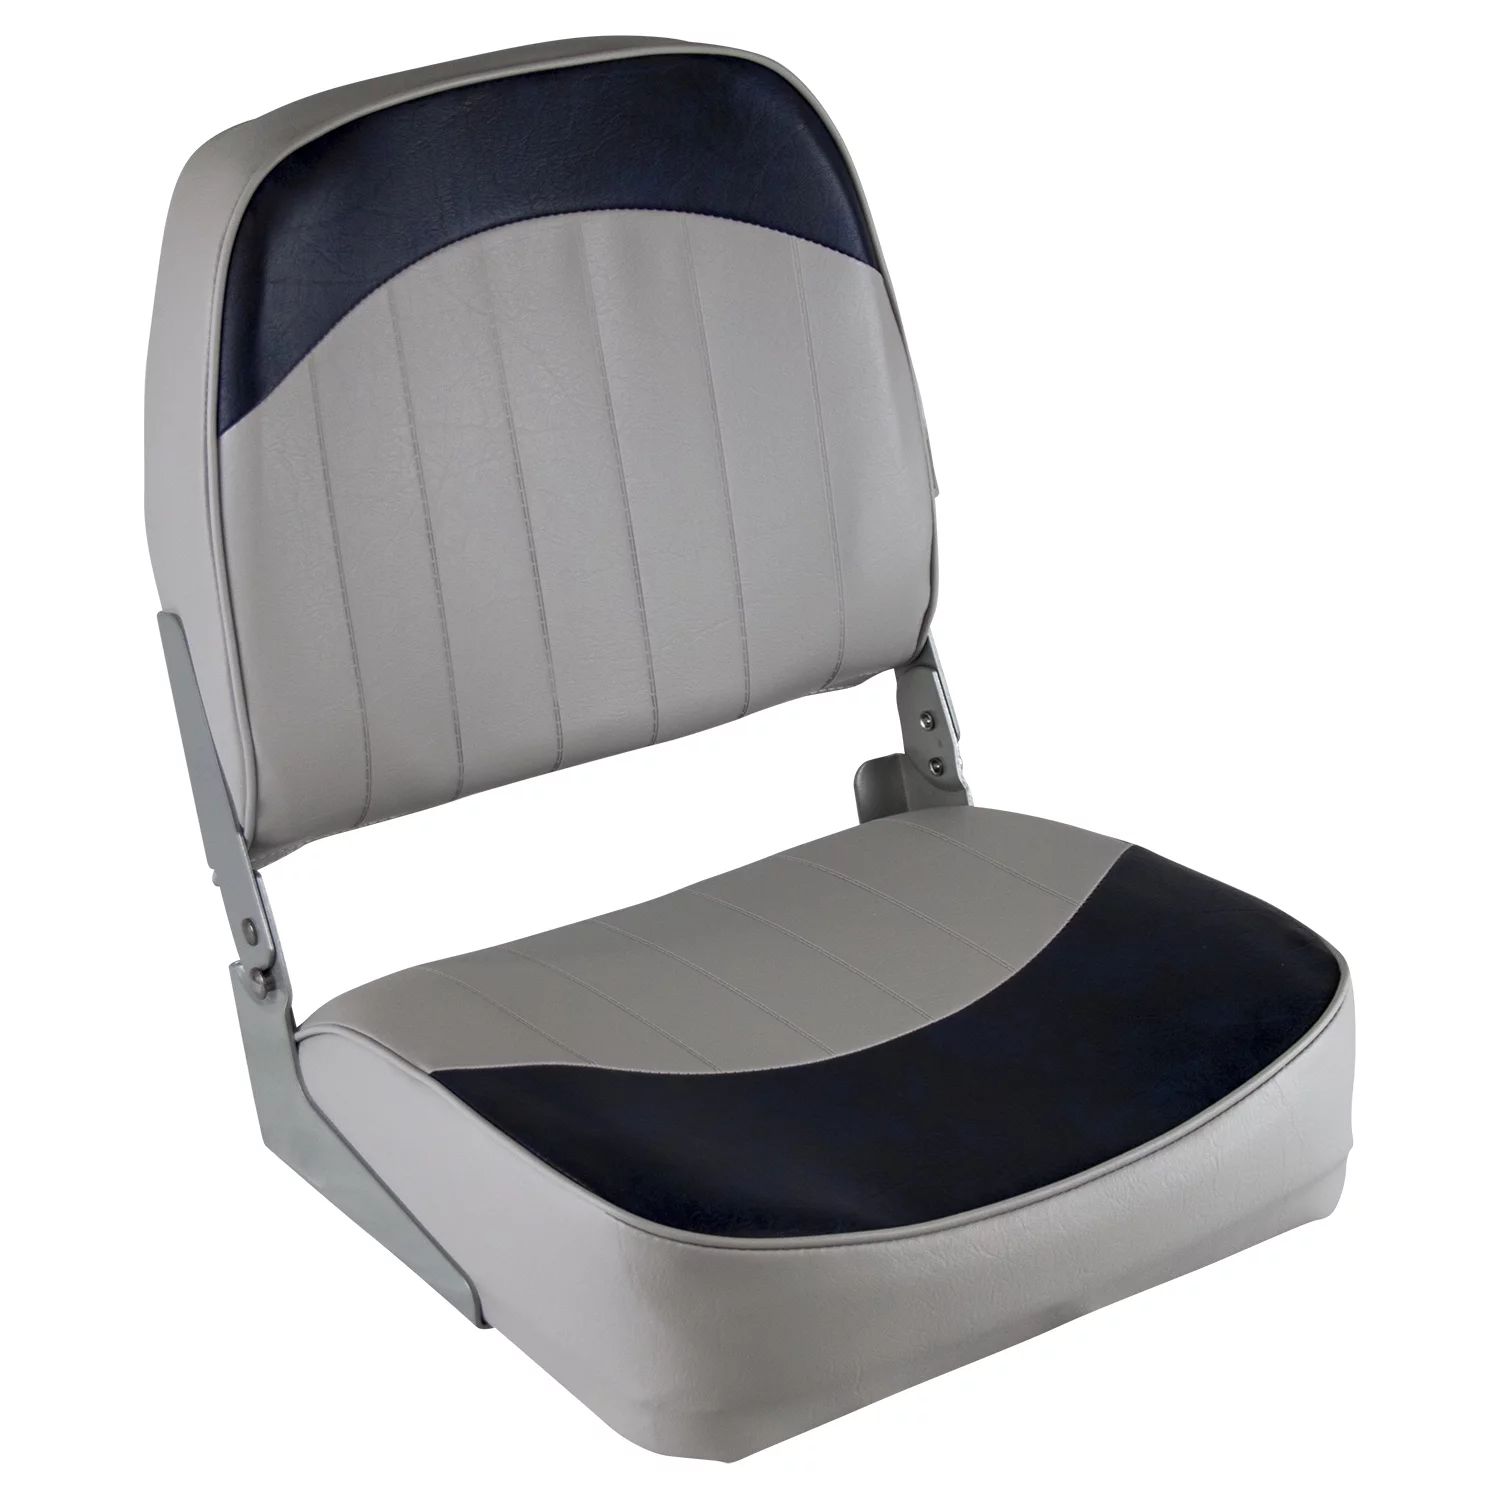 Wise 8WD734PLS-660 Low Back Boat Seat, Grey / Navy | Walmart (US)